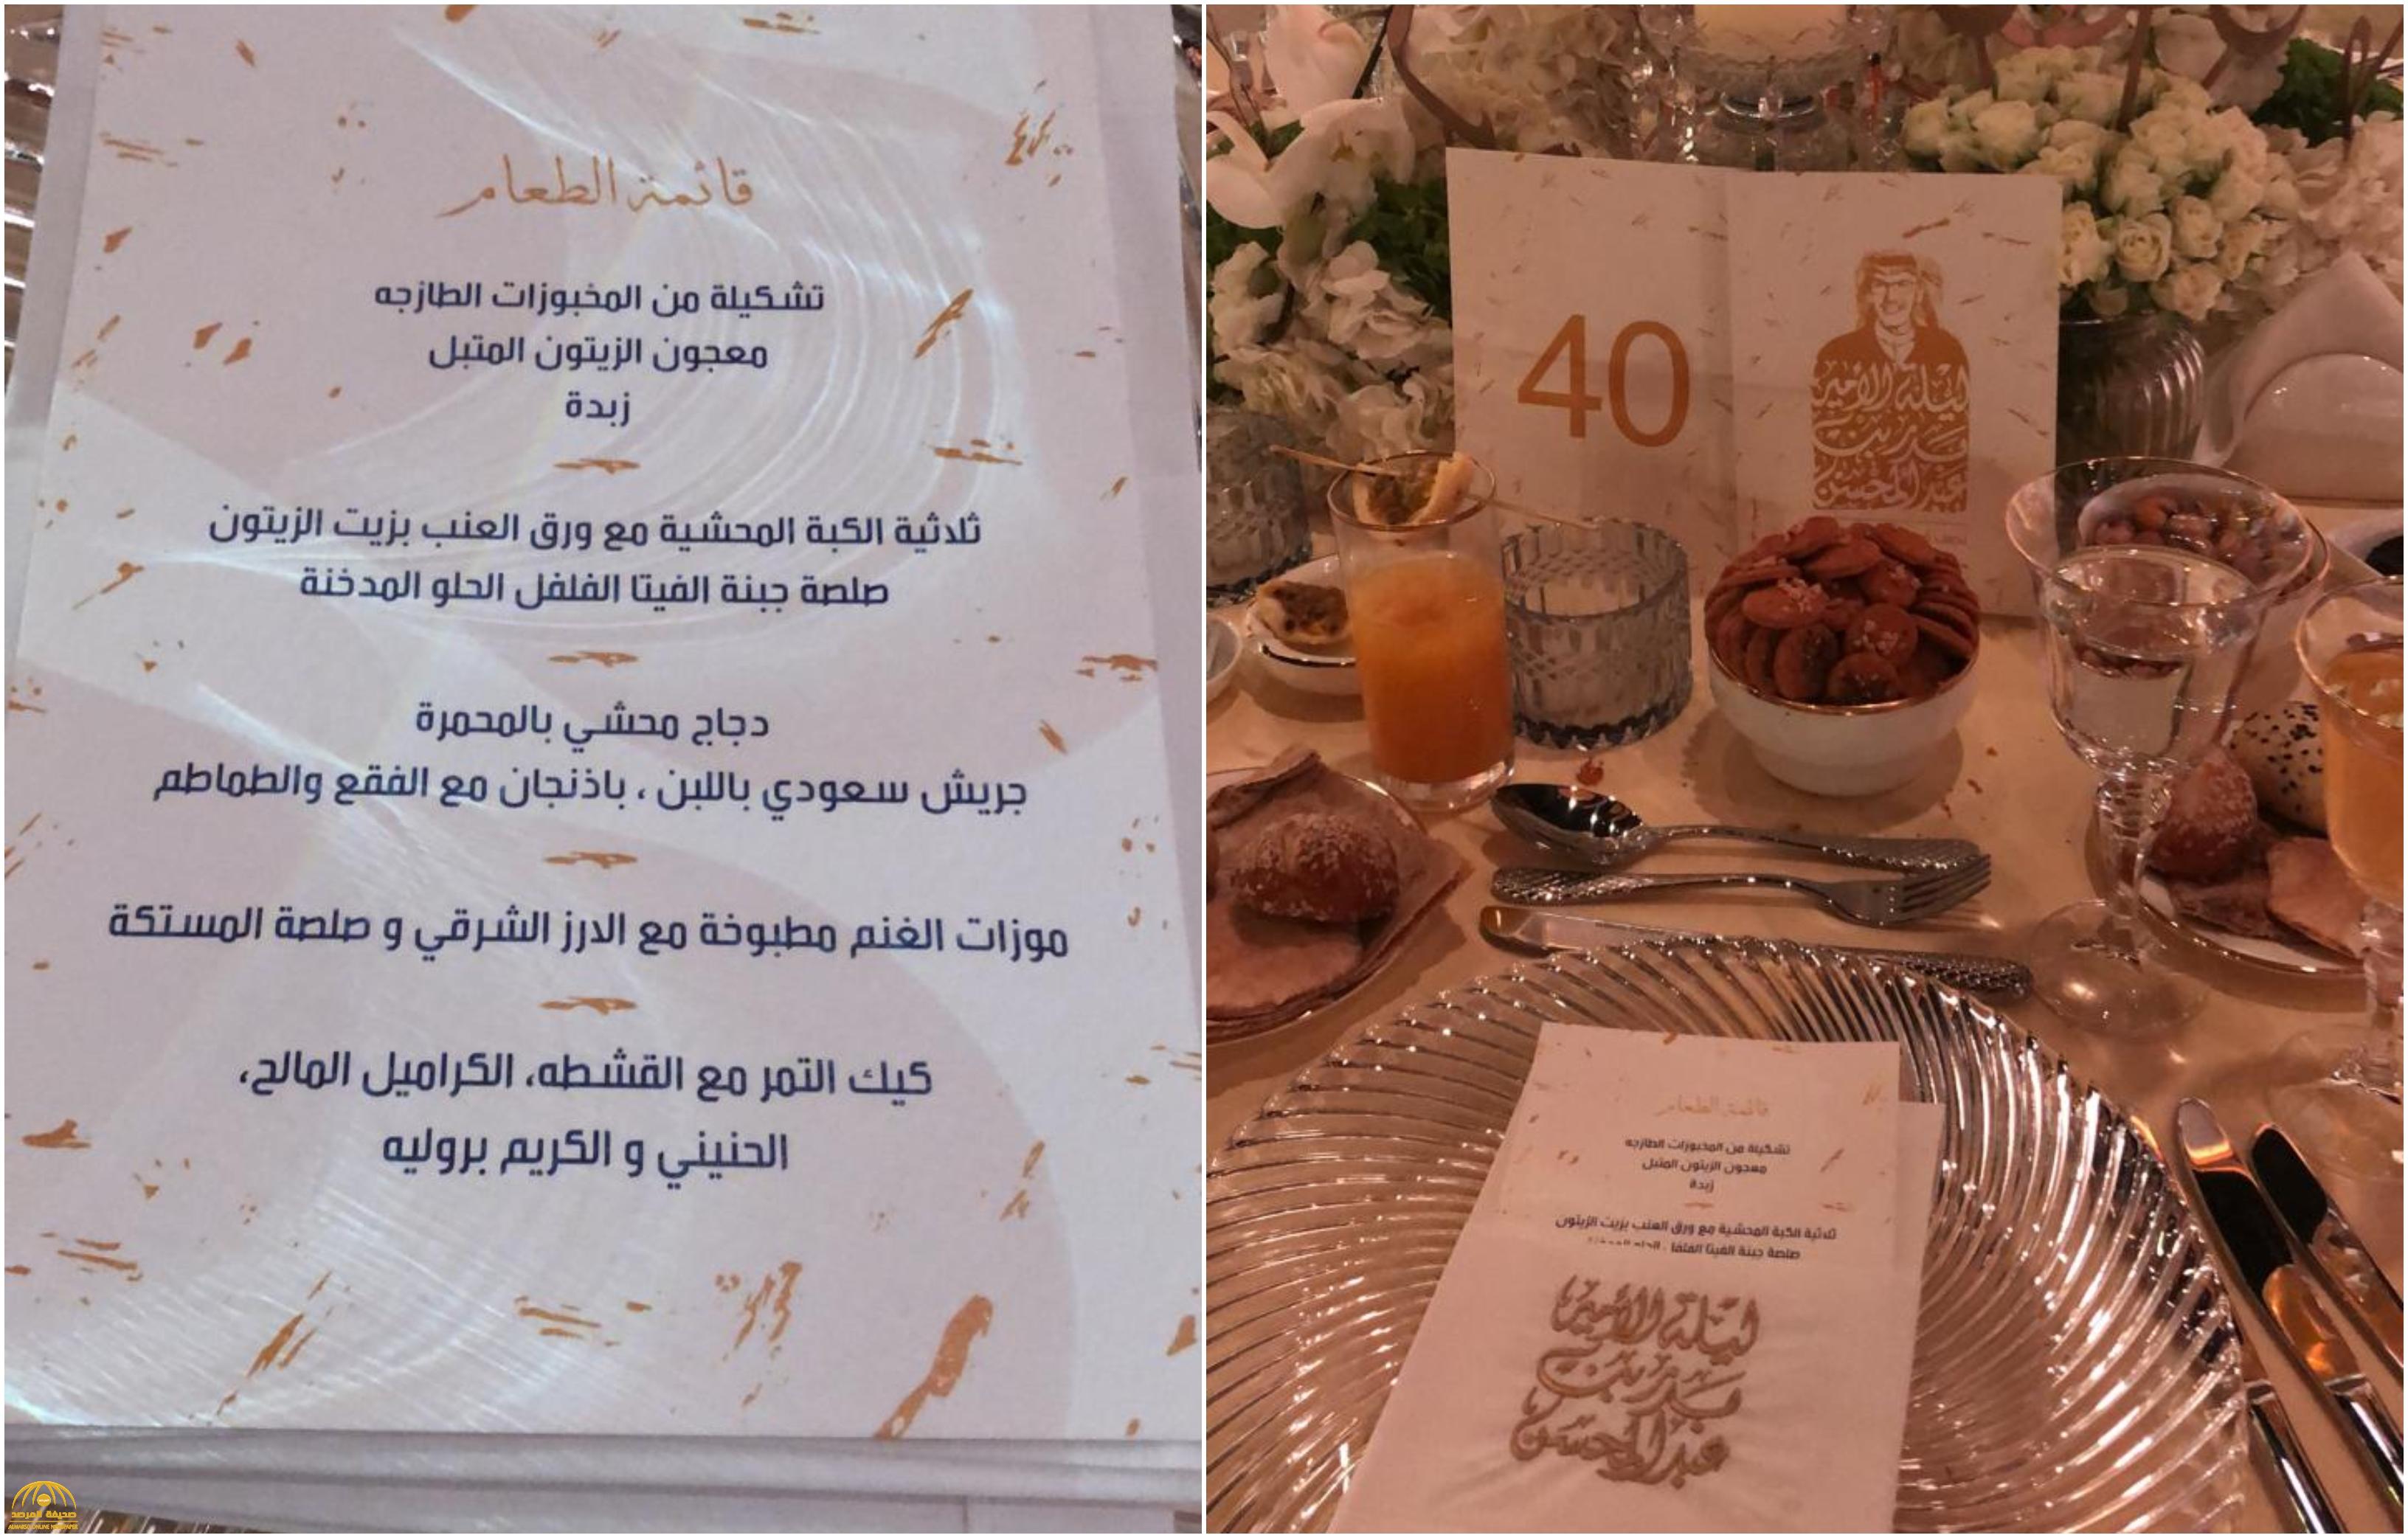 شاهد: صور وفيديو للتجهيزات الضخمة وقائمة أنواع الطعام لحفل هيئة الترفيه لتكريم الأمير بدر بن عبد المحسن